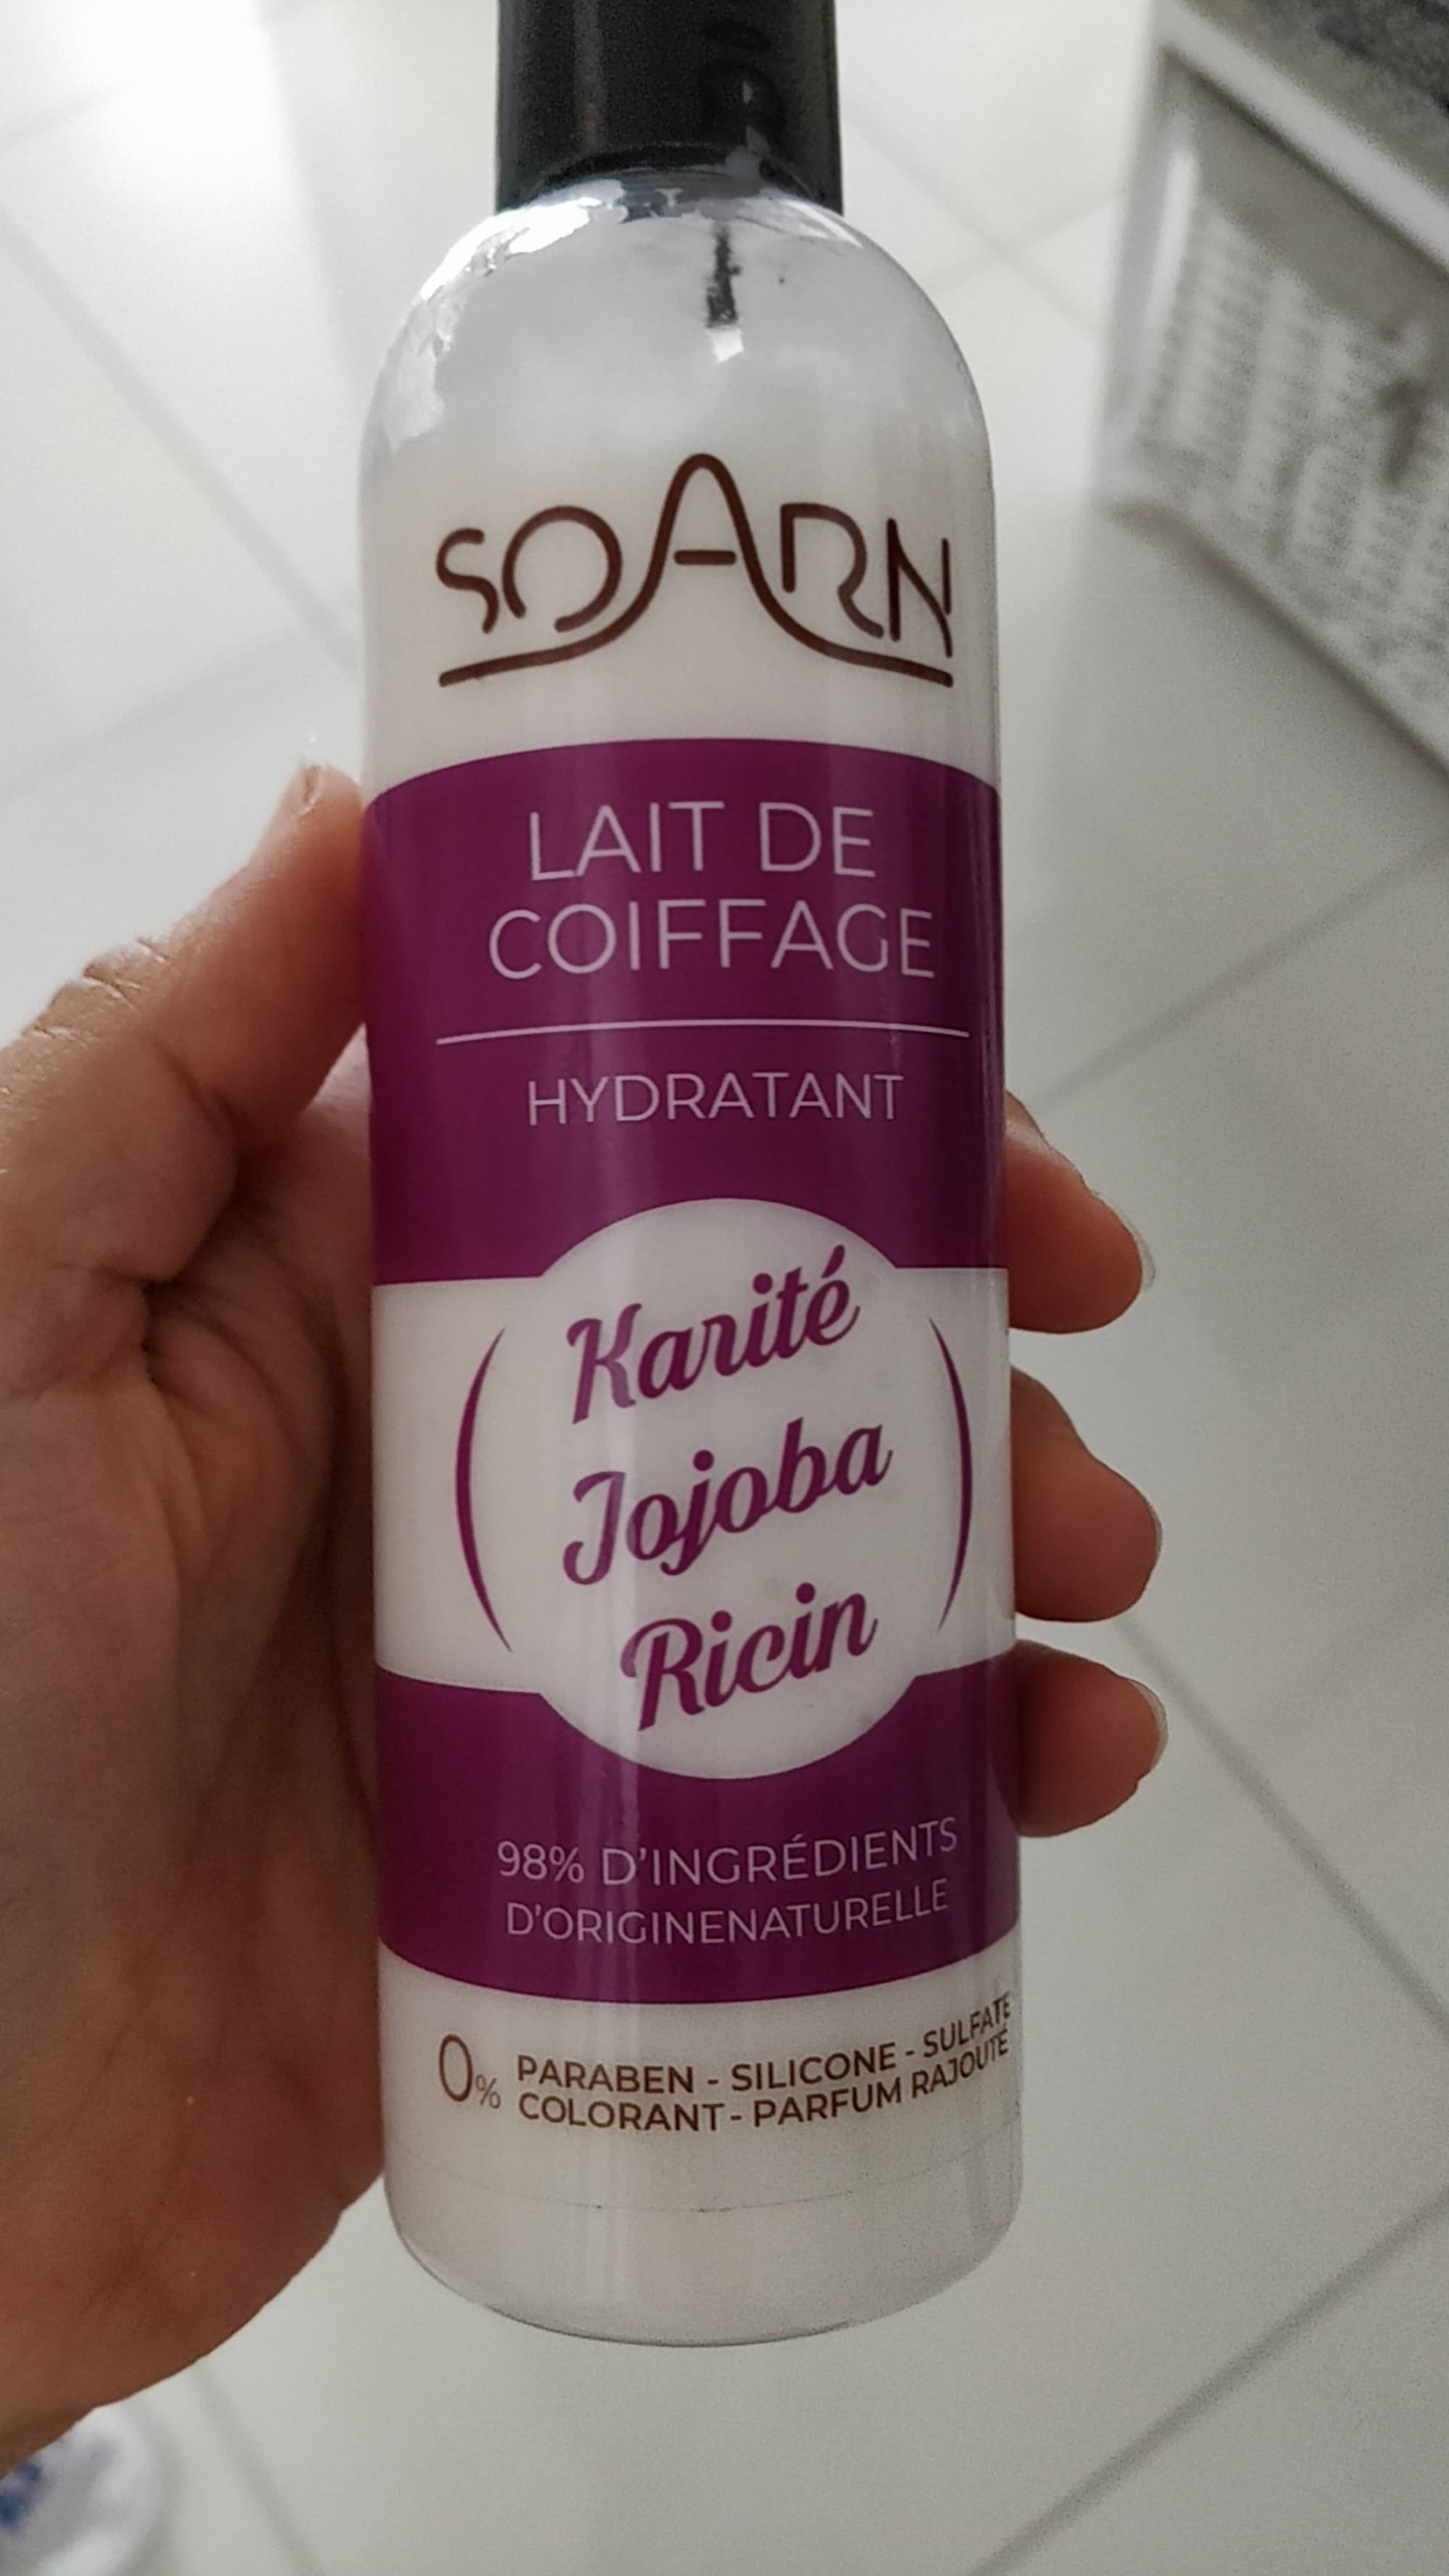 SOARN - Lait de coiffage hydratant - Karité Jojoba ricin